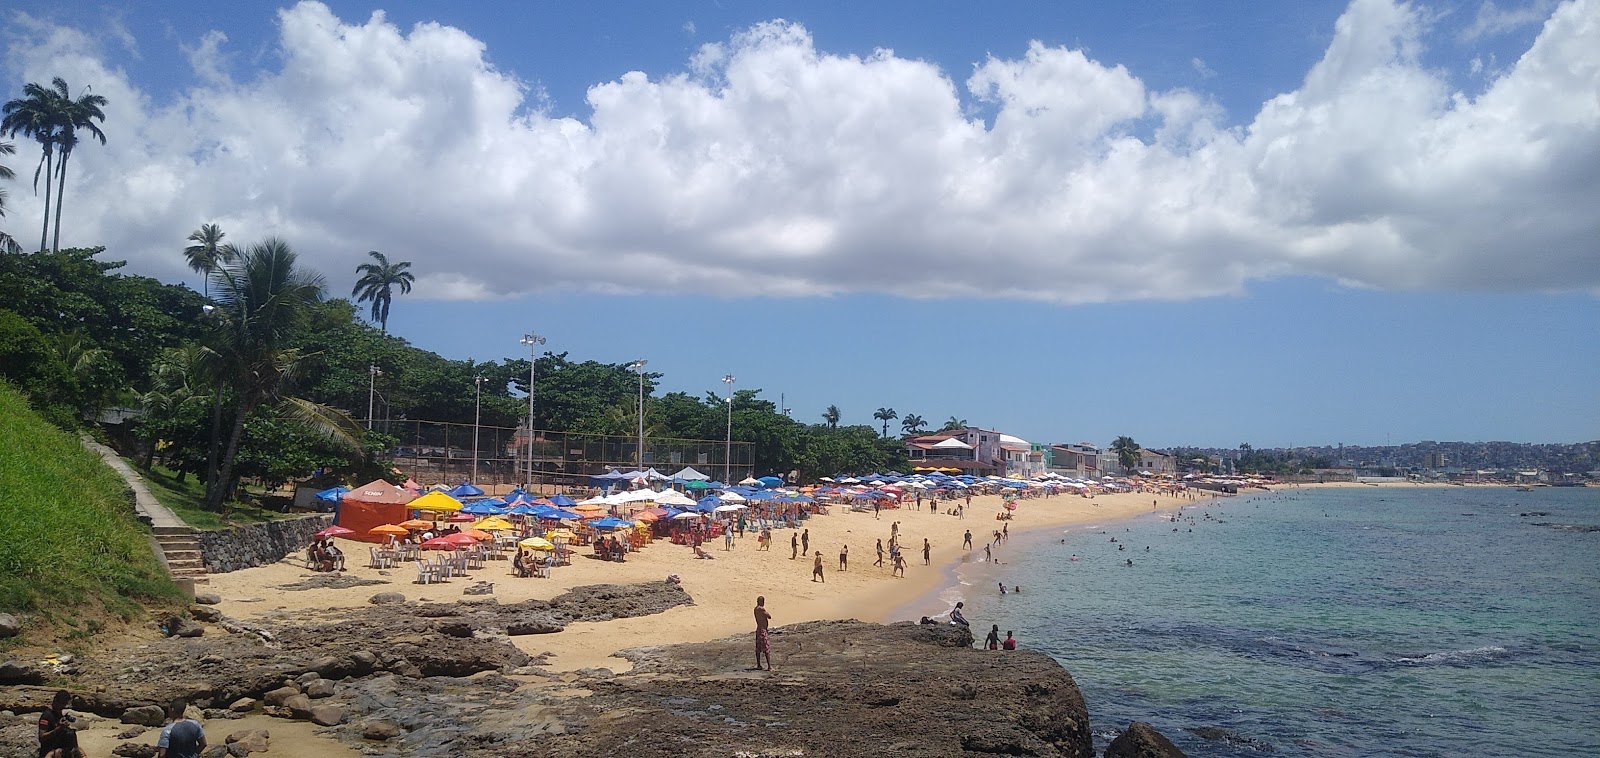 Praia da Boa Viagem'in fotoğrafı - rahatlamayı sevenler arasında popüler bir yer